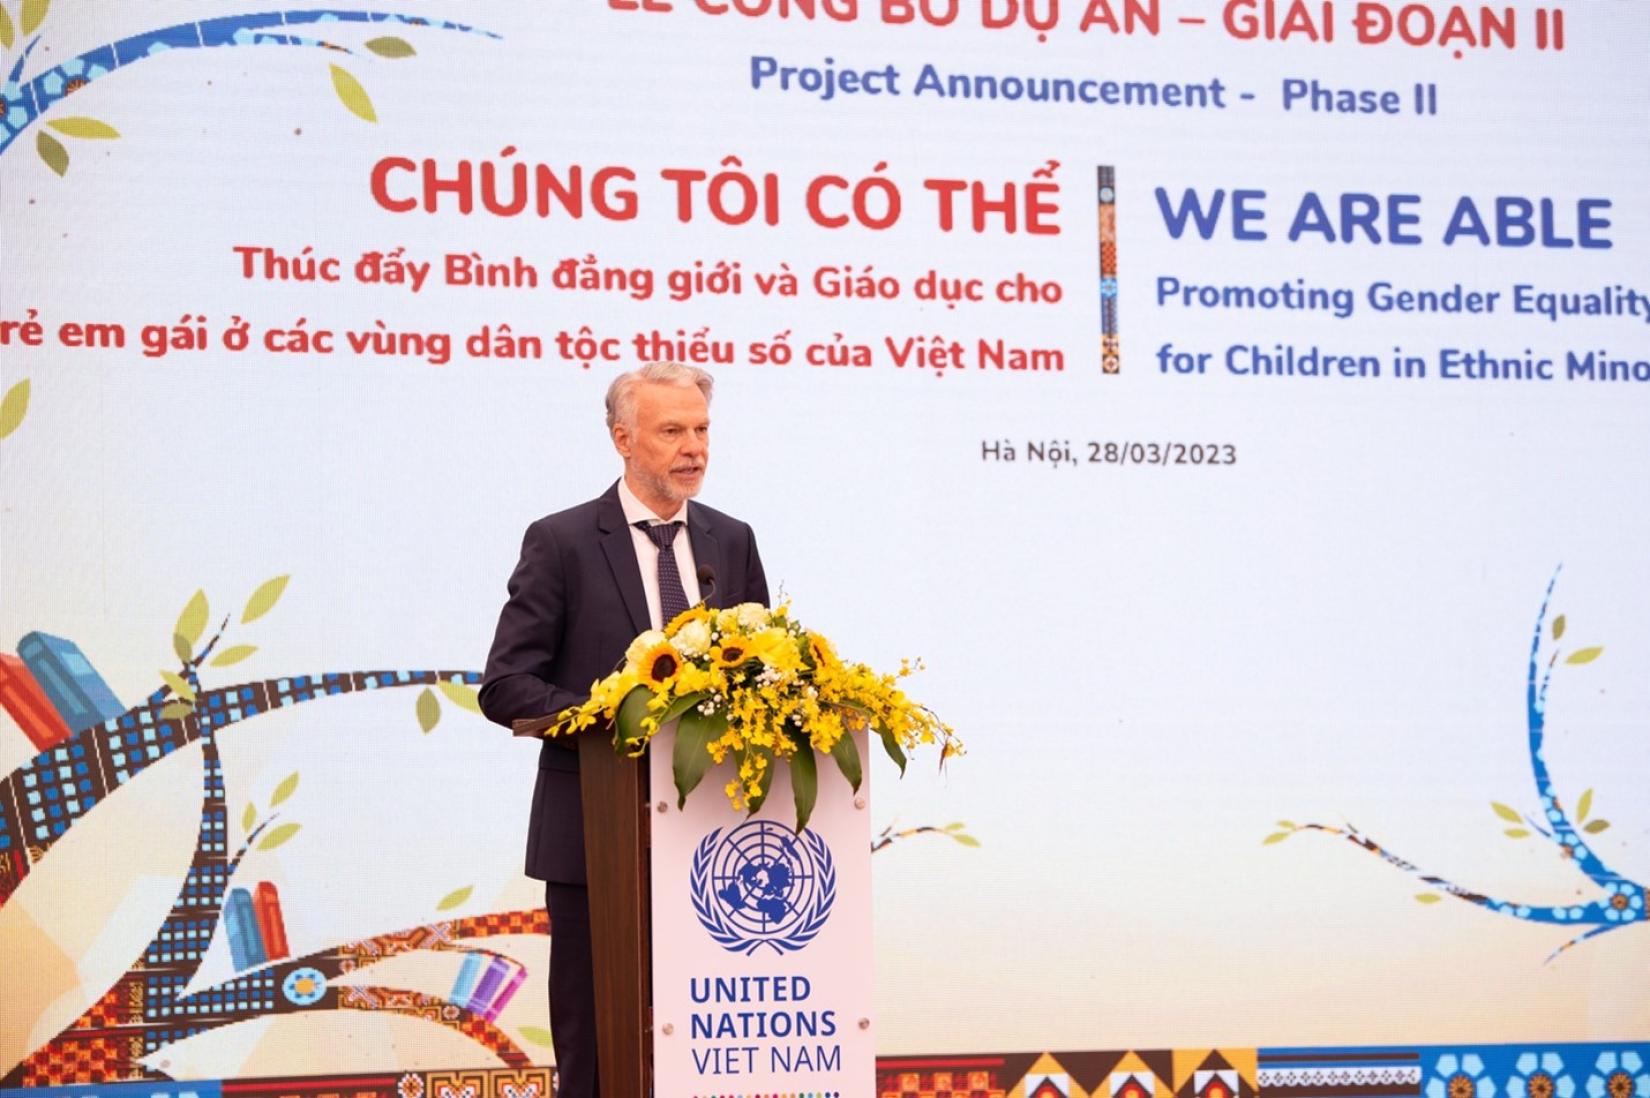 UNESCO Representative to Viet Nam, Mr Christian Manhart